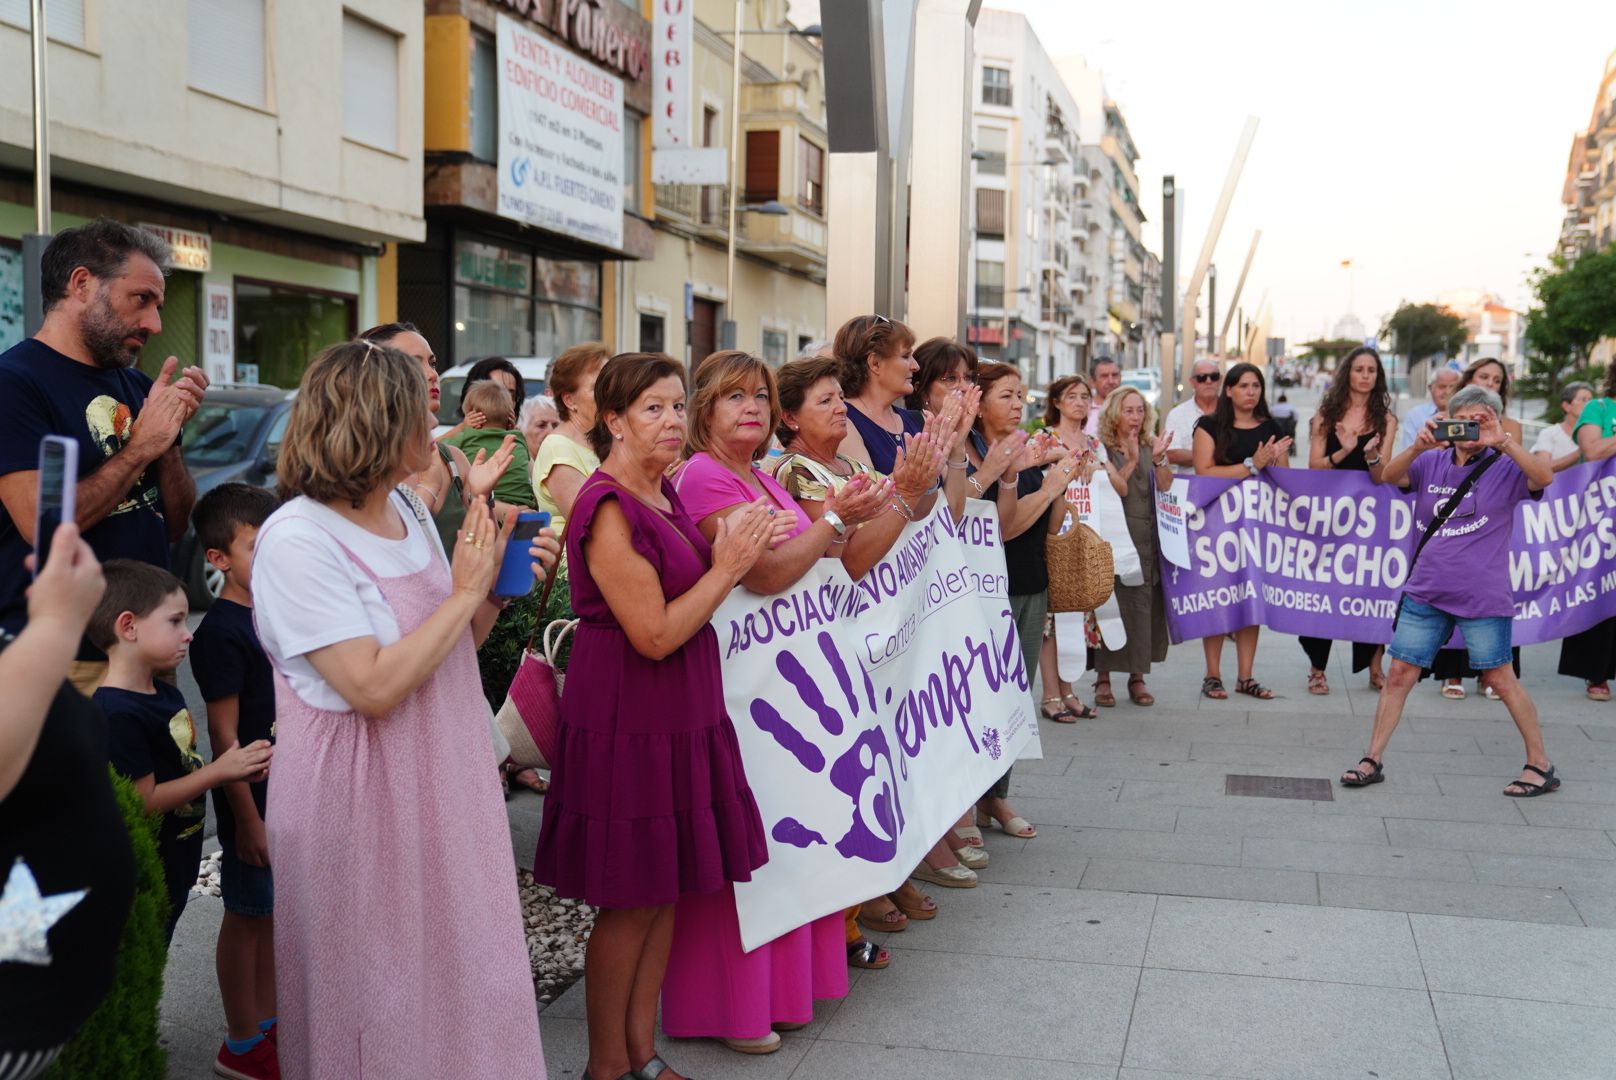 Grito unánime contra la violencia machista en Pozoblanco